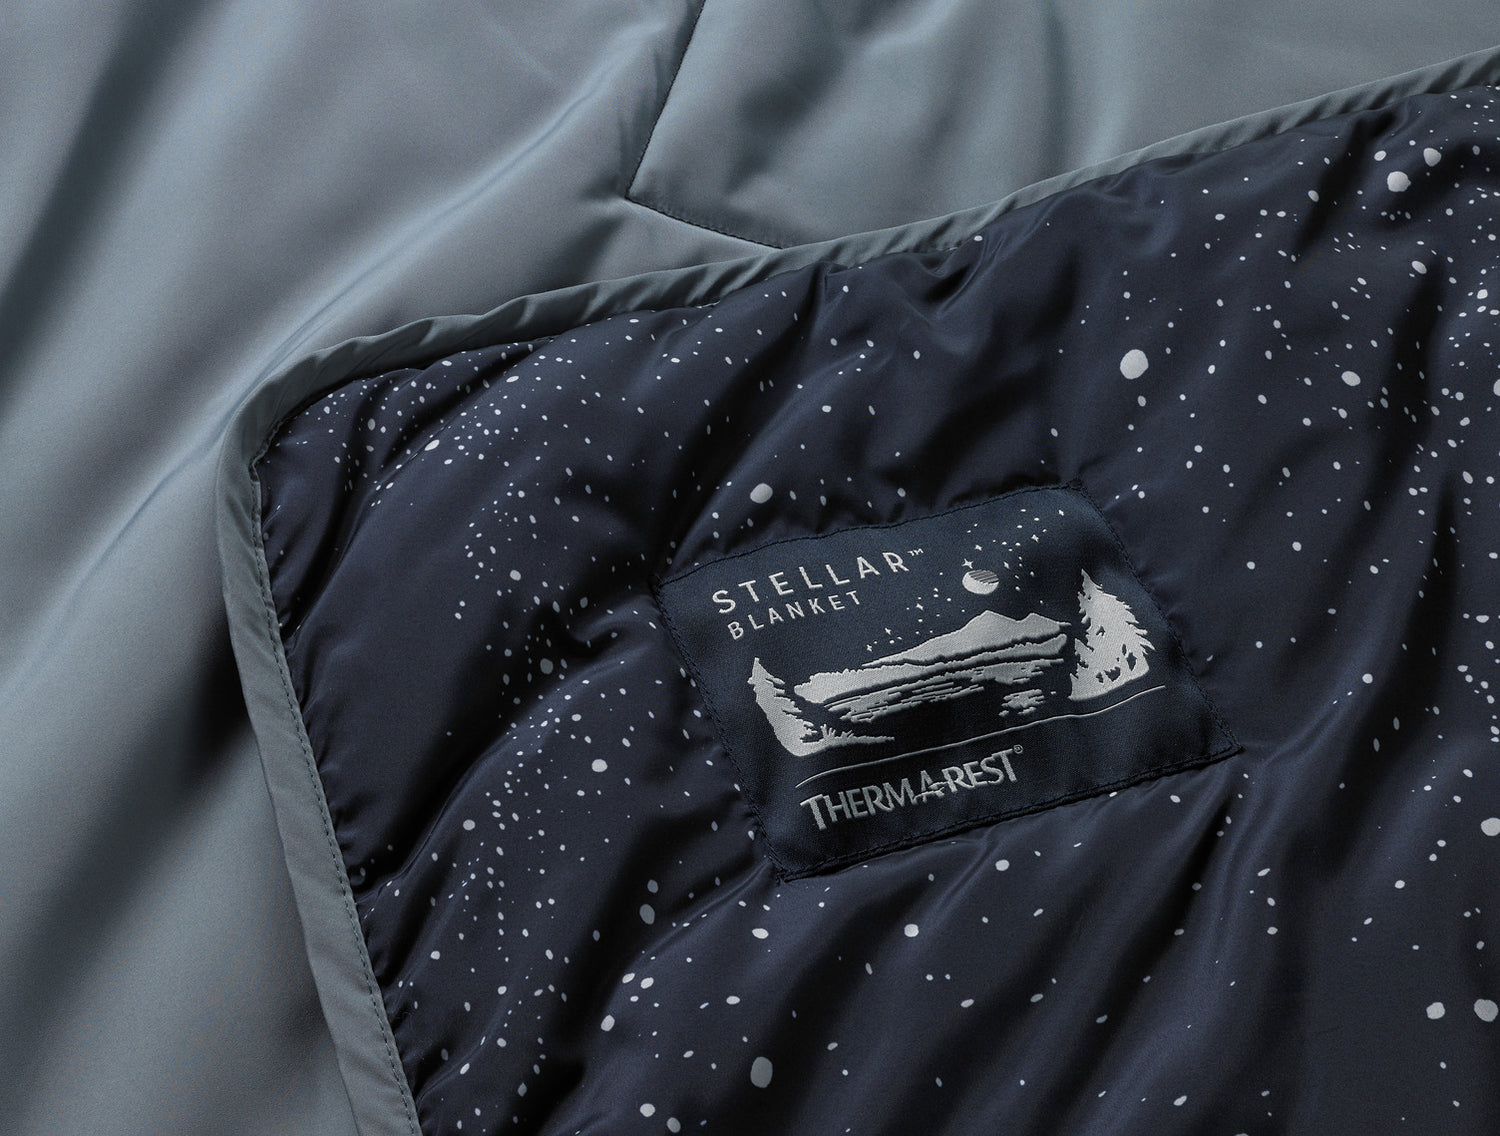 Thermarest Stellar Blanket Space Case Print